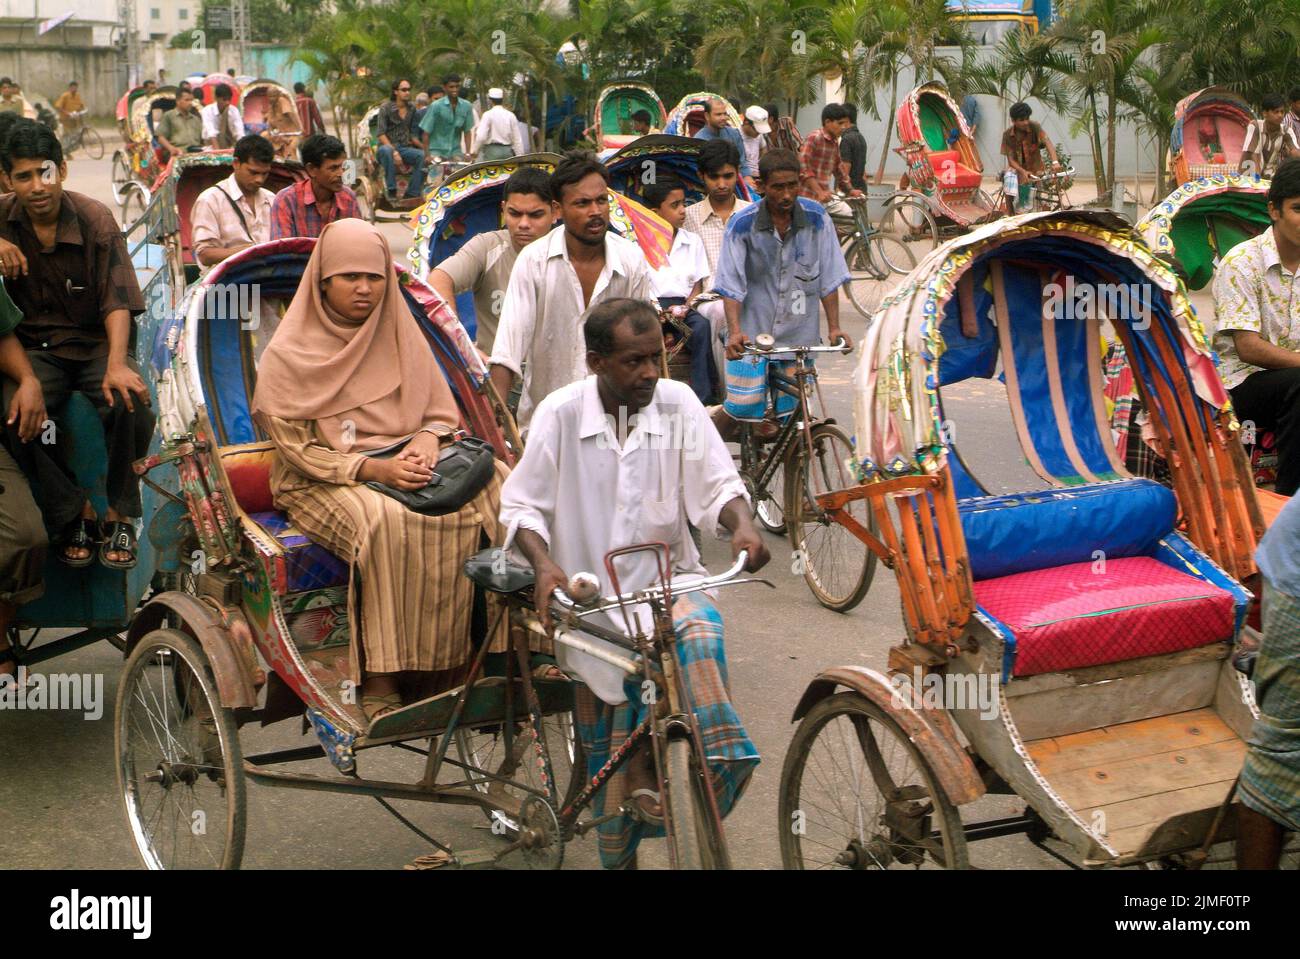 Dhaka, Bangladesh - 17 septembre 2007: Des personnes non identifiées sur des rickshaws traditionnels, un type traditionnel de transport Banque D'Images